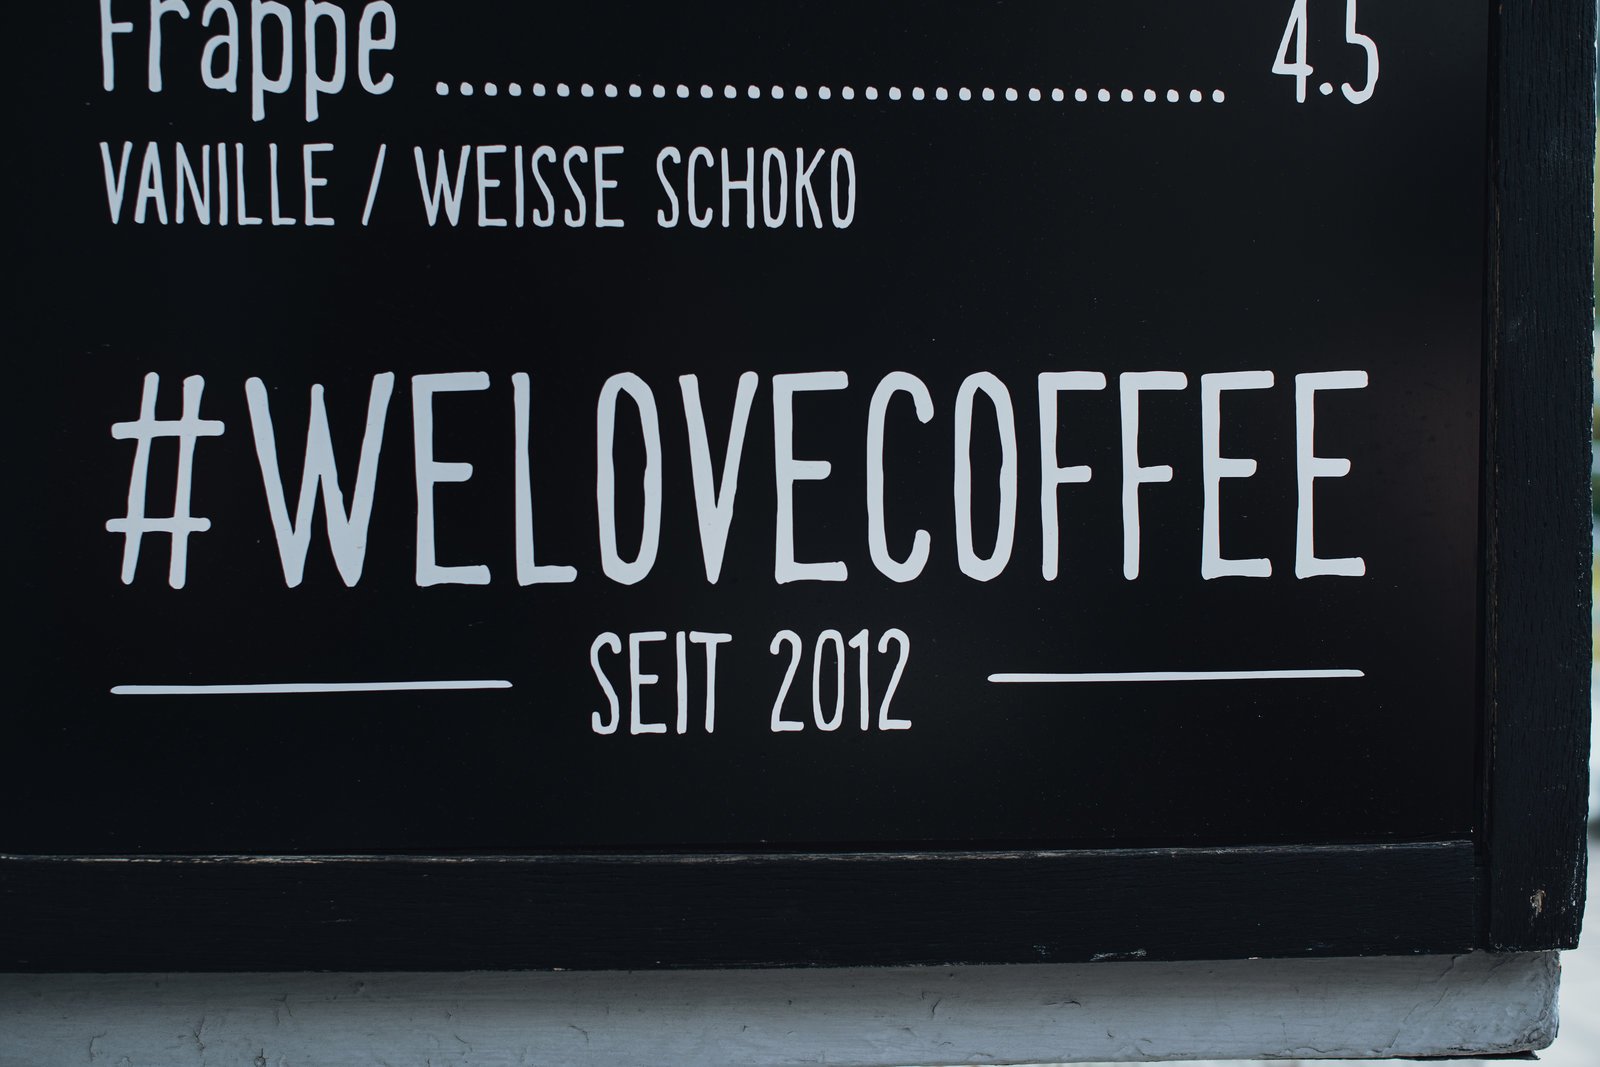 we love coffee